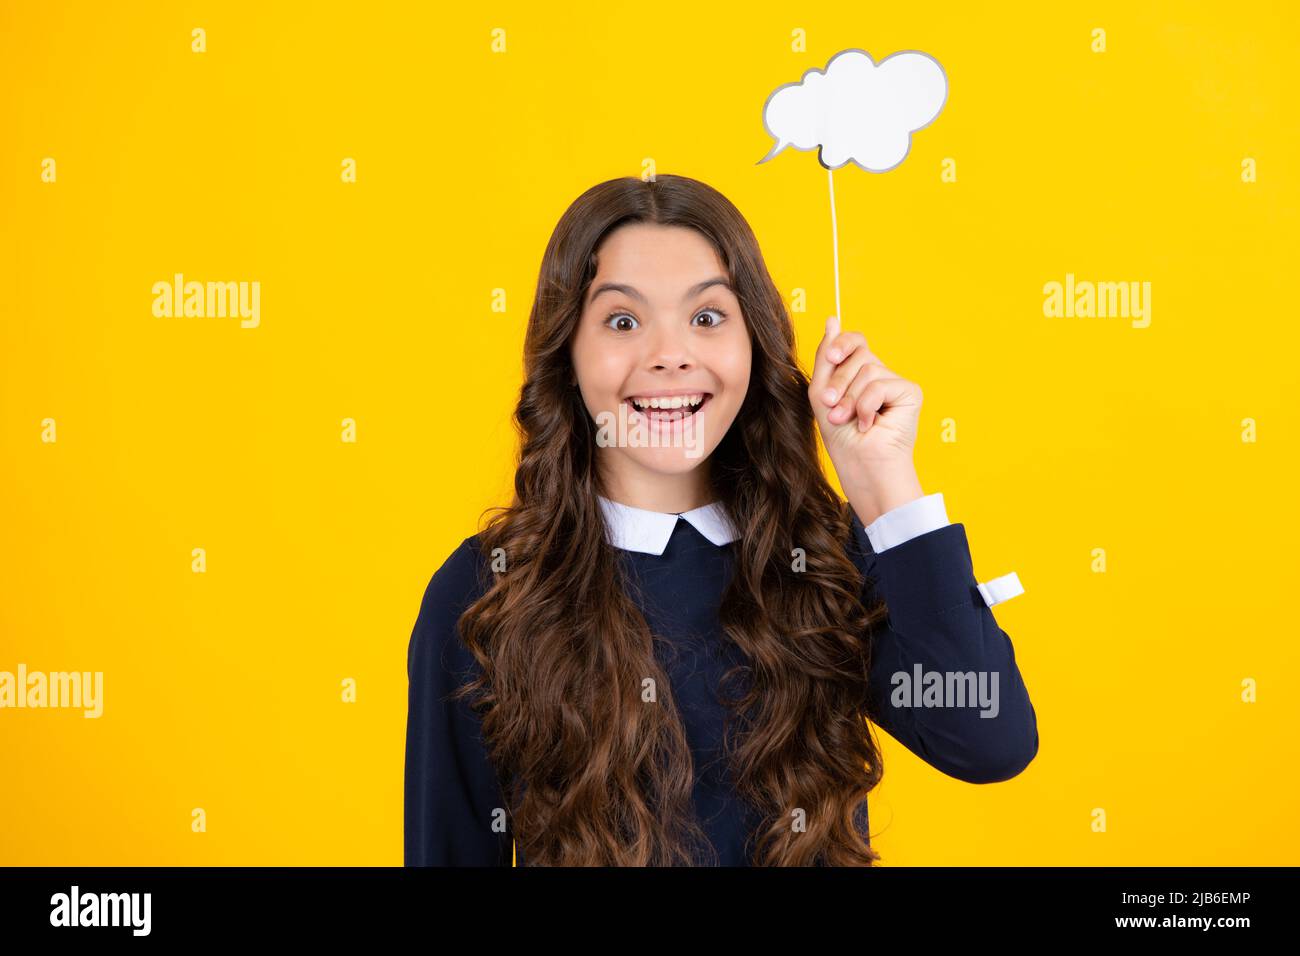 Teen Schule Mädchen halten Papier Wolke Aktien Verkauf Rabatt Gedanken tragen Schule uniforn auf gelber Farbe Hintergrund. Chat-Informationen zum Cloud-Kopierbereich. Stockfoto